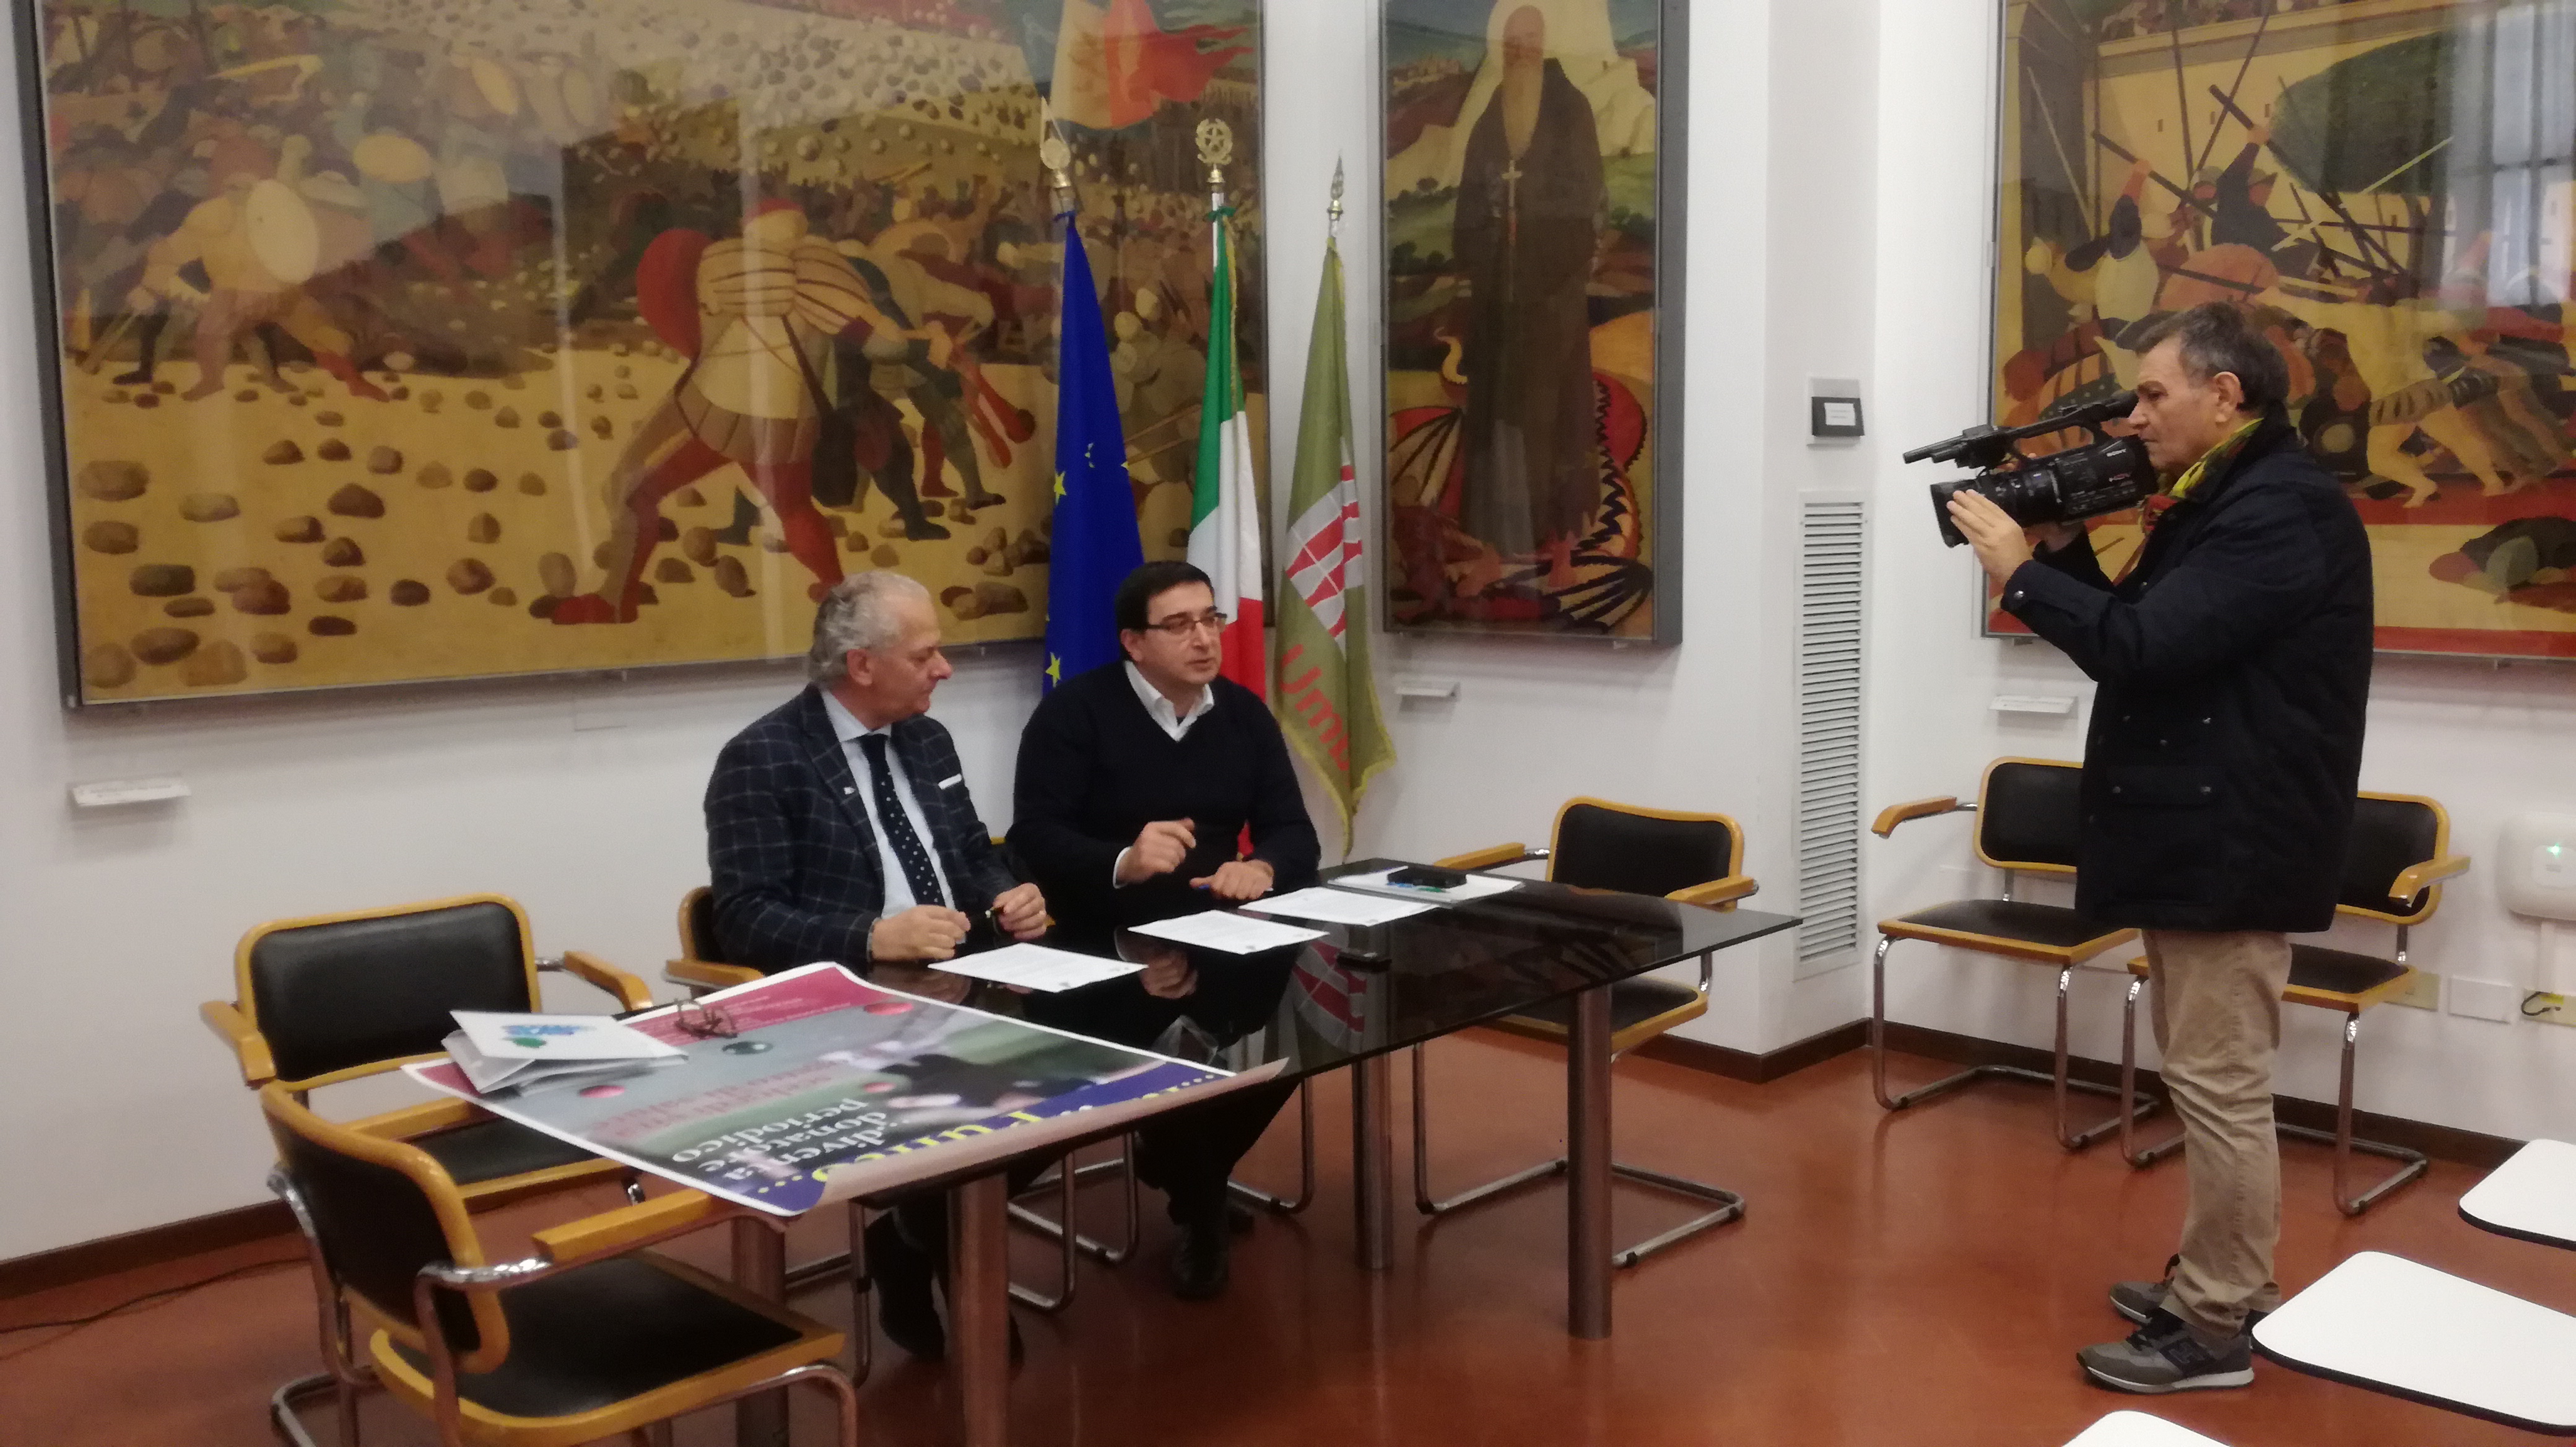 Protocollo d’intesa tra Avis Regionale dell’Umbria e Federazione Italiana Bocce dell’Umbria – Agenzia Stampa Italia